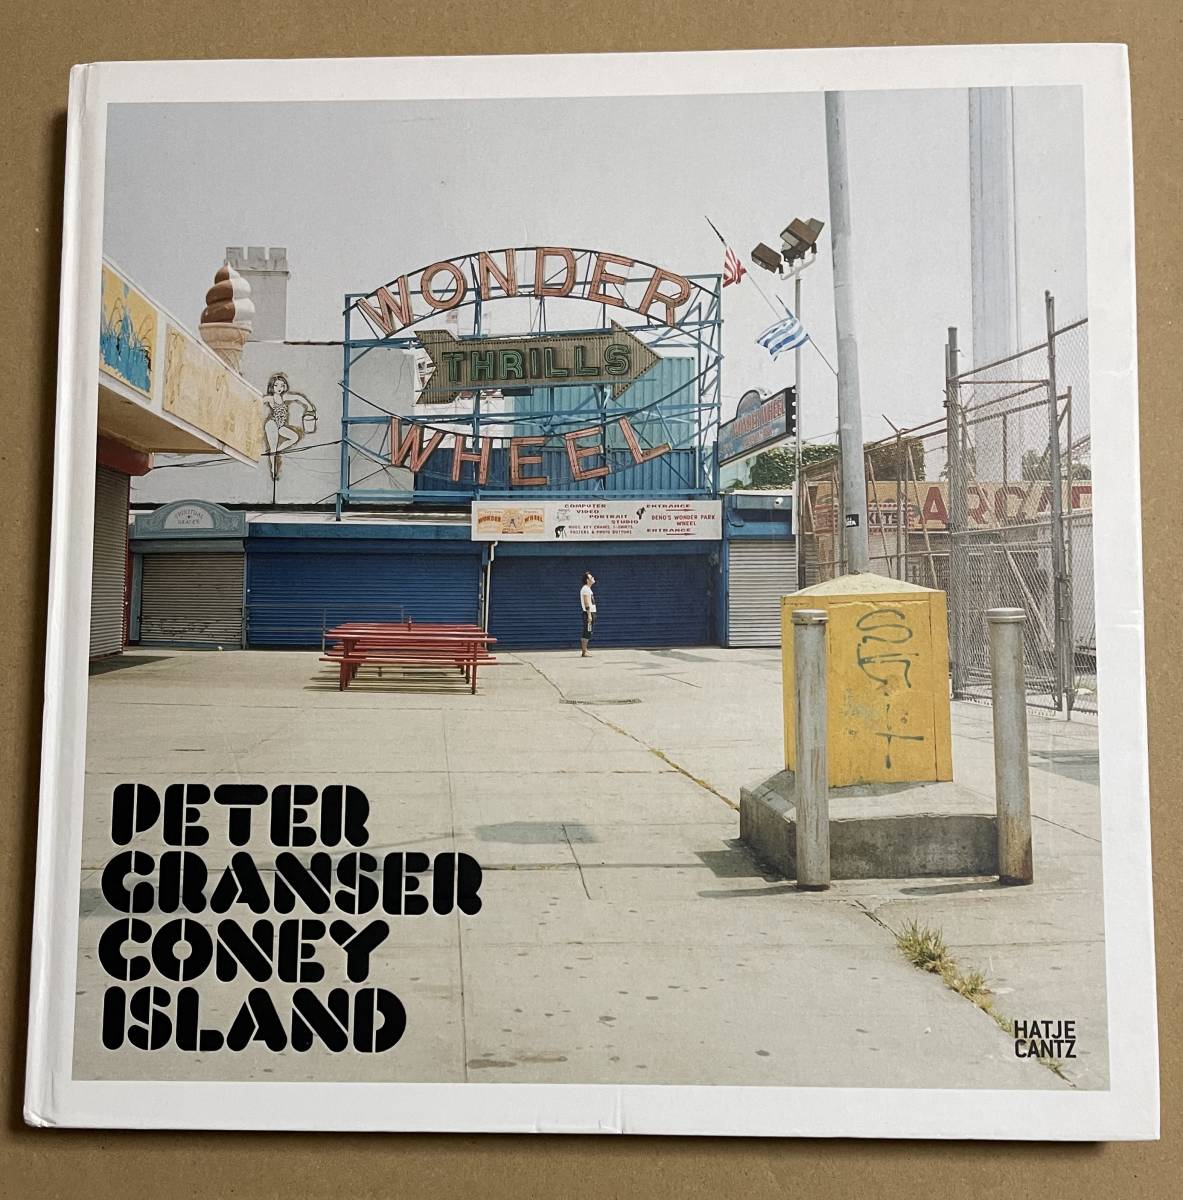 Peter Granser Coney Island　コニーアイランド ピーター・グランサー 写真集